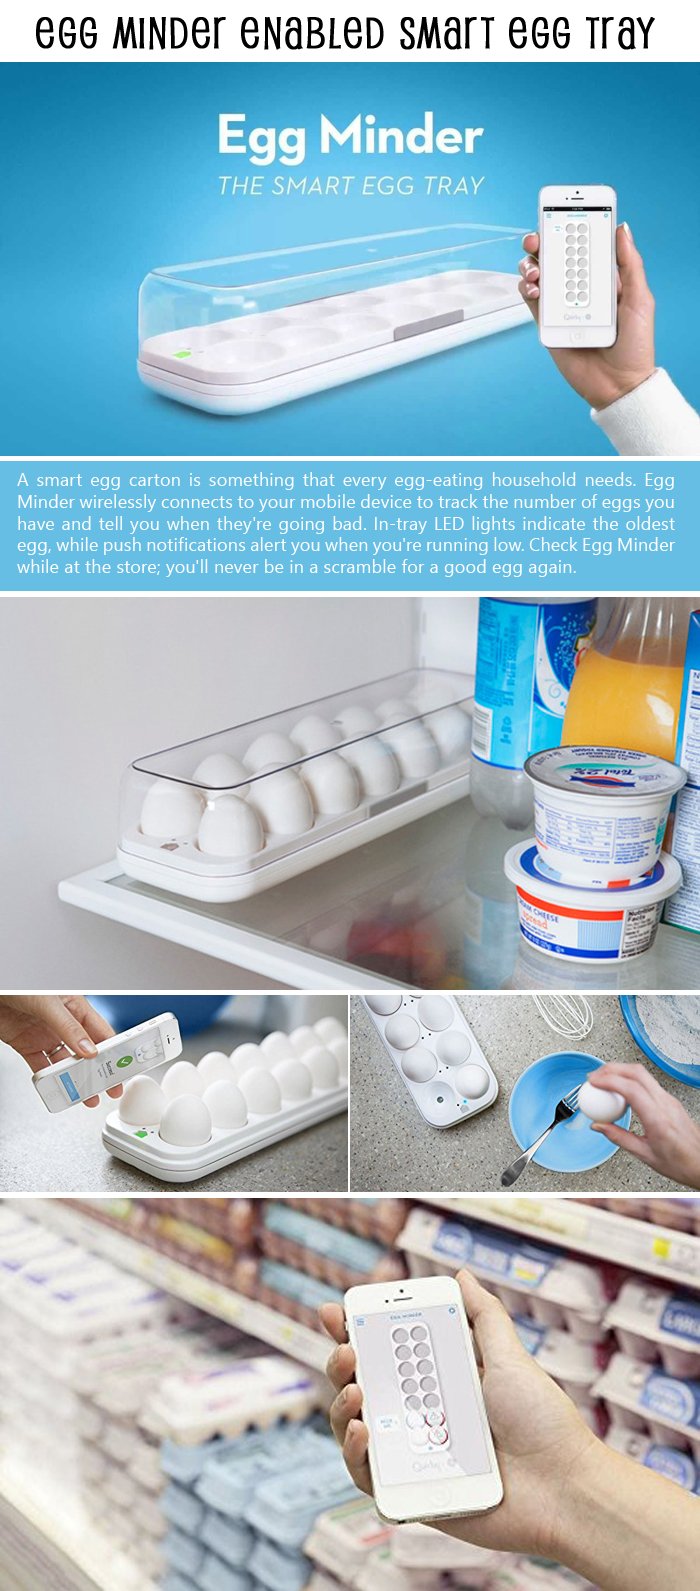 egg-minder-enabled-smart-egg-tray